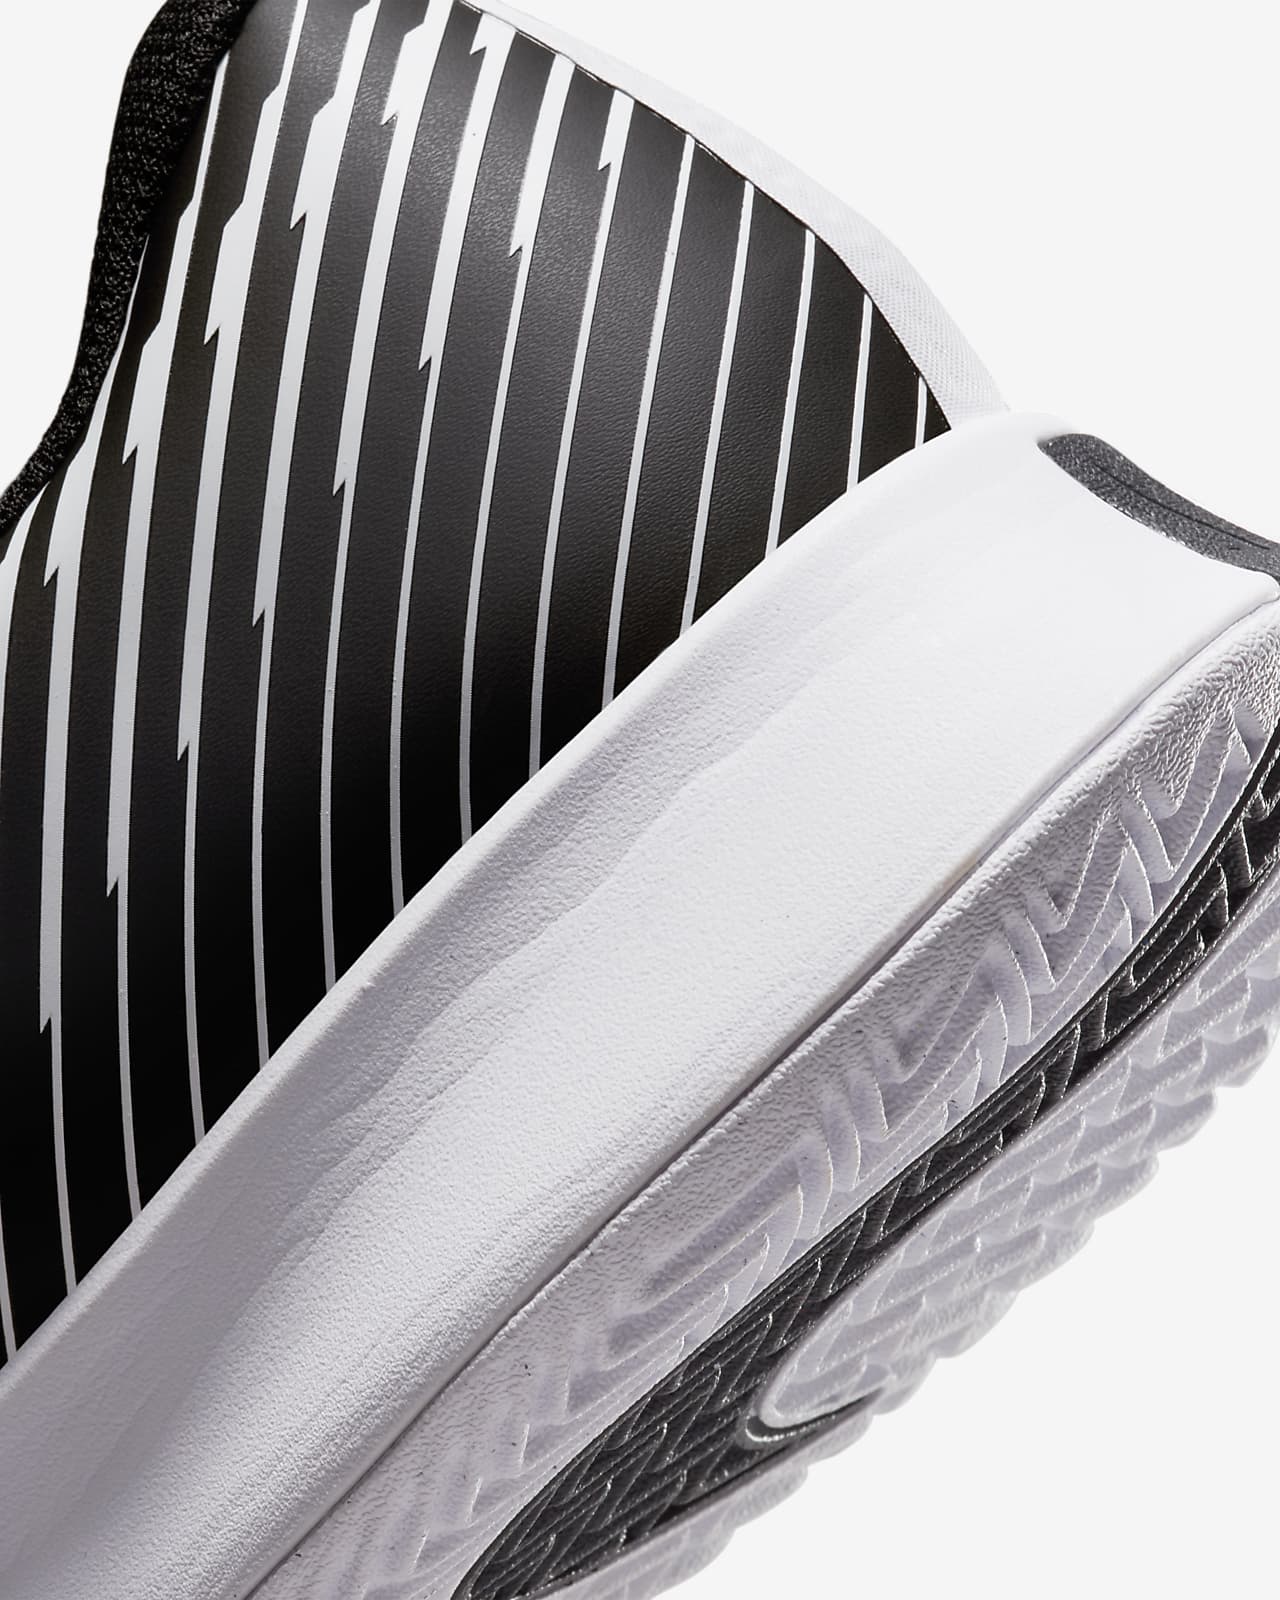 Chaussure Homme Nike Vapor Pro 2 Noir/Blanc - TOUTES SURFACES